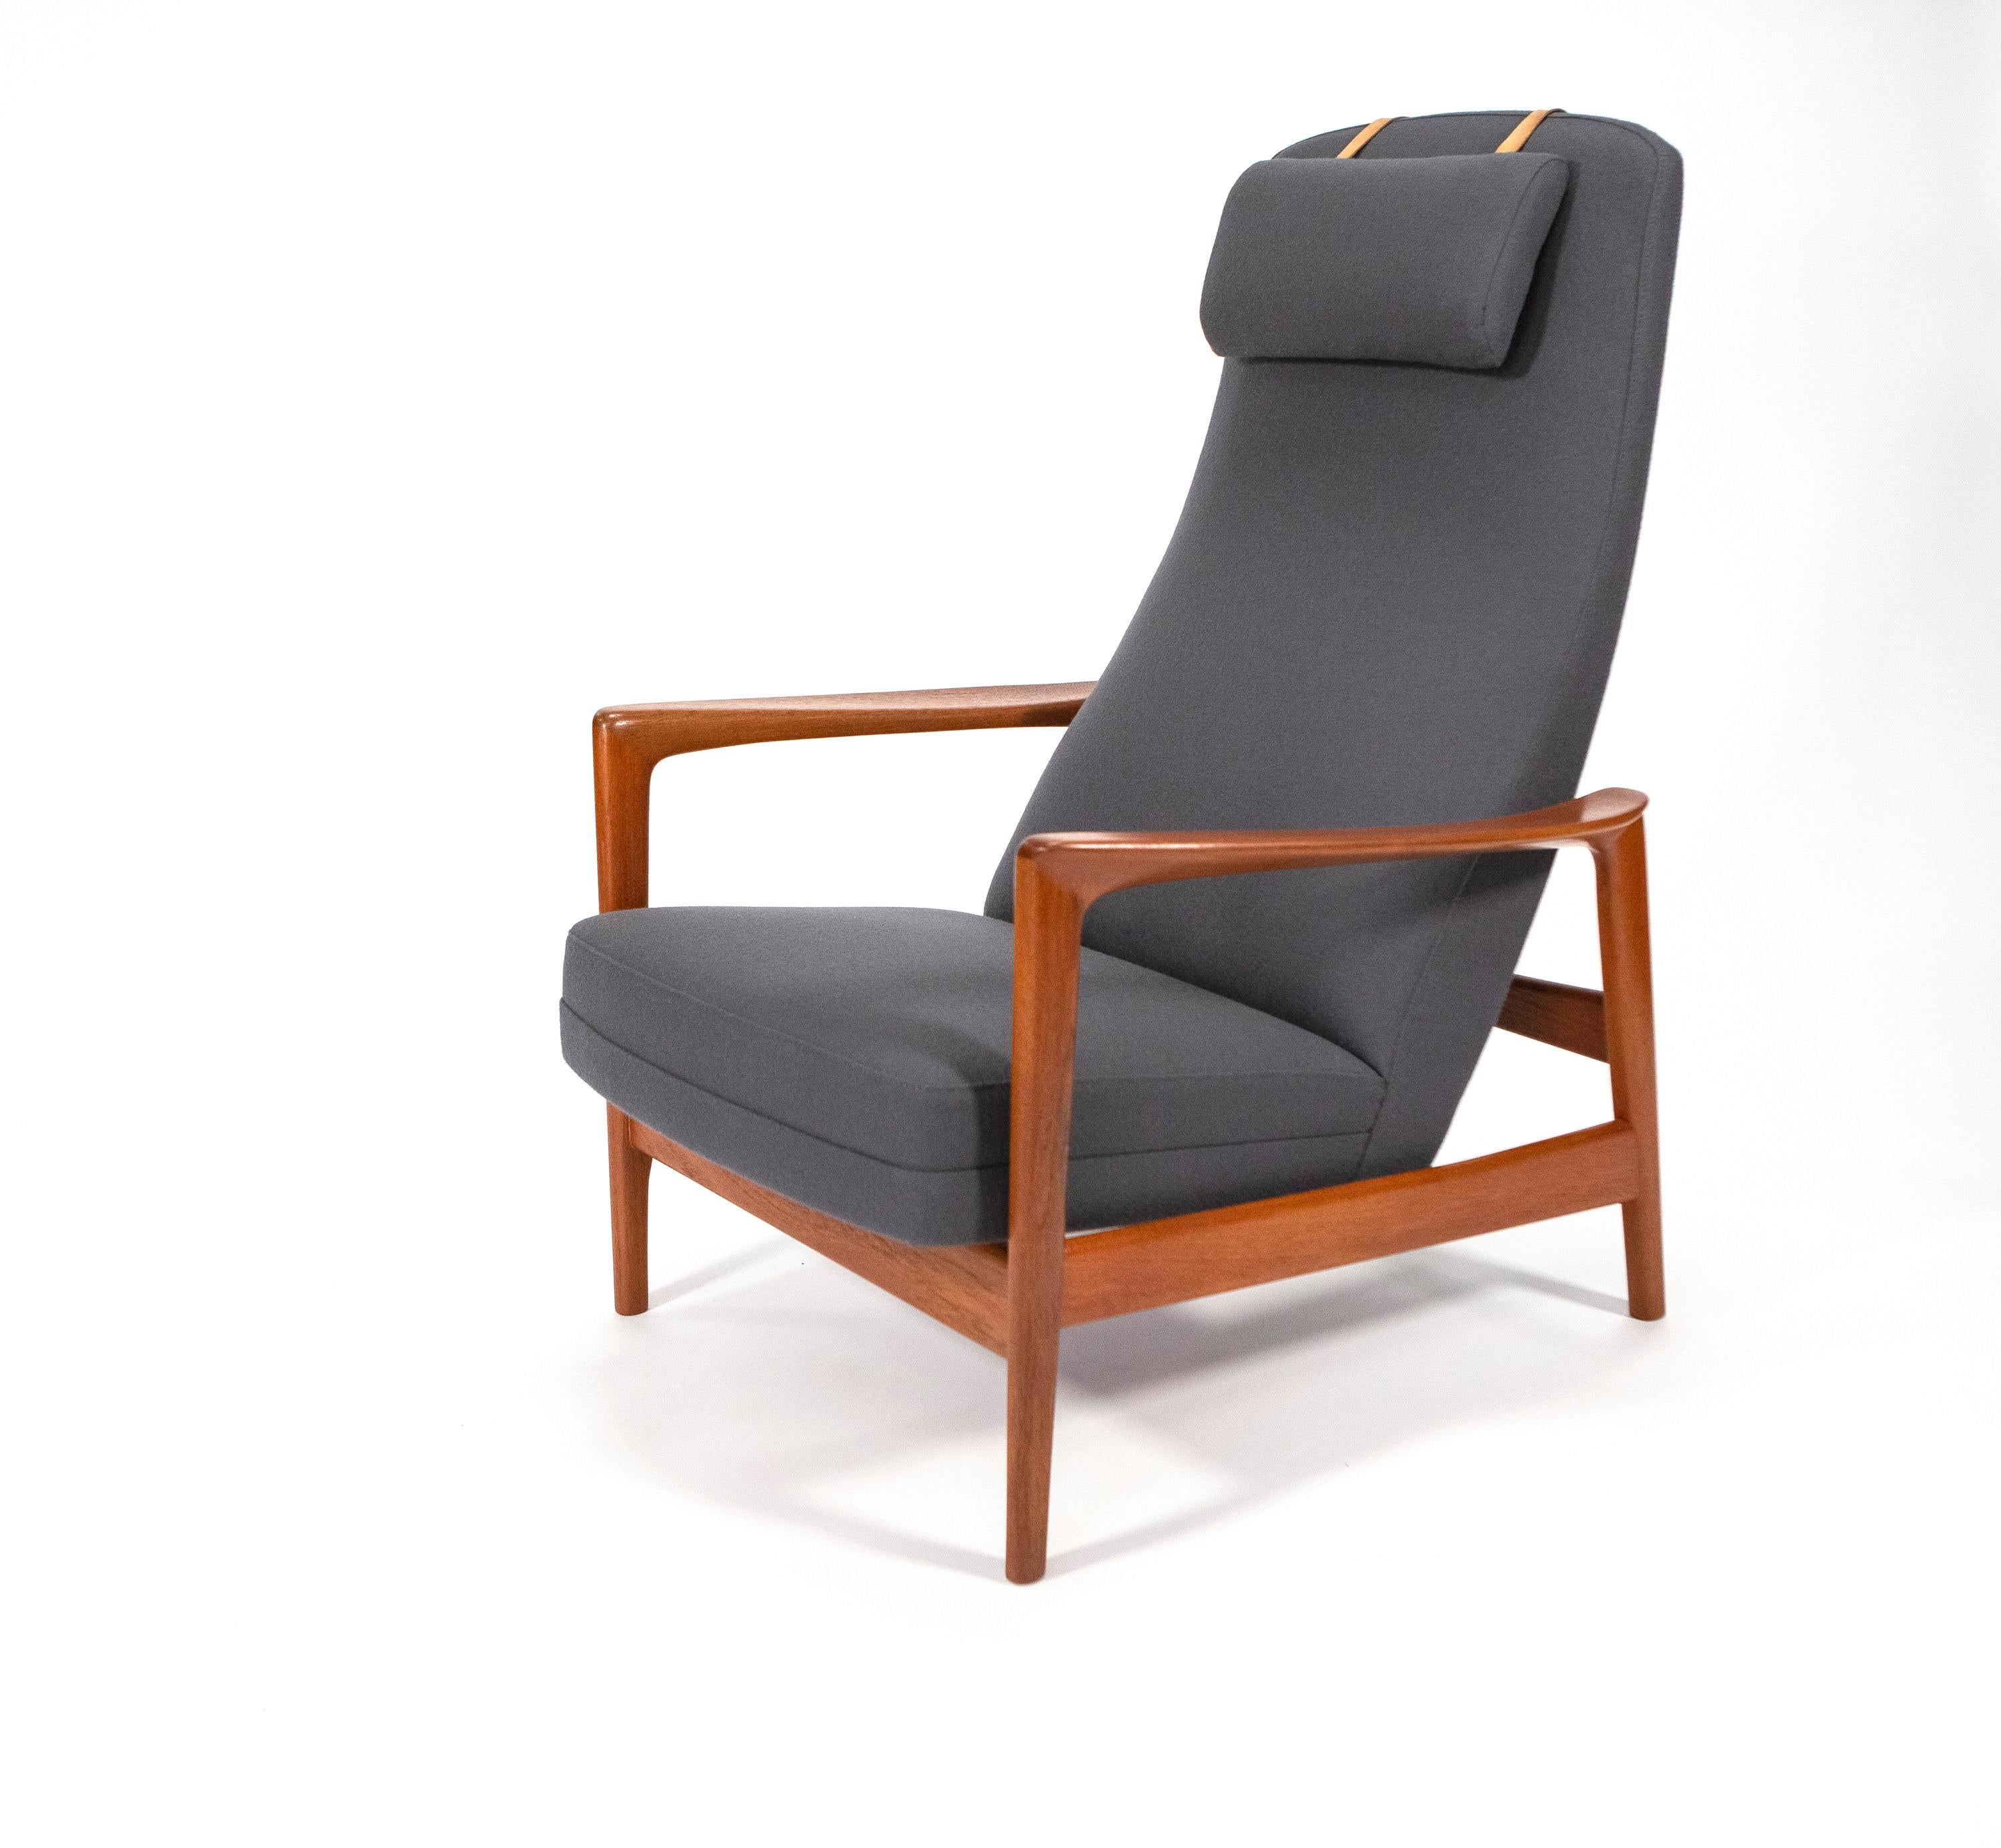 Folke Ohlsson Teakholz 'Duxiesta' Verstellbarer Sessel von DUX - Schweden 1960er Jahre

1960er Jahre Folke Ohlsson für DUX Lounge Chair & Ottoman, verstellbares Teakholzgestell. Hergestellt in Schweden.

Einstellbarer Ruhesessel für individuellen